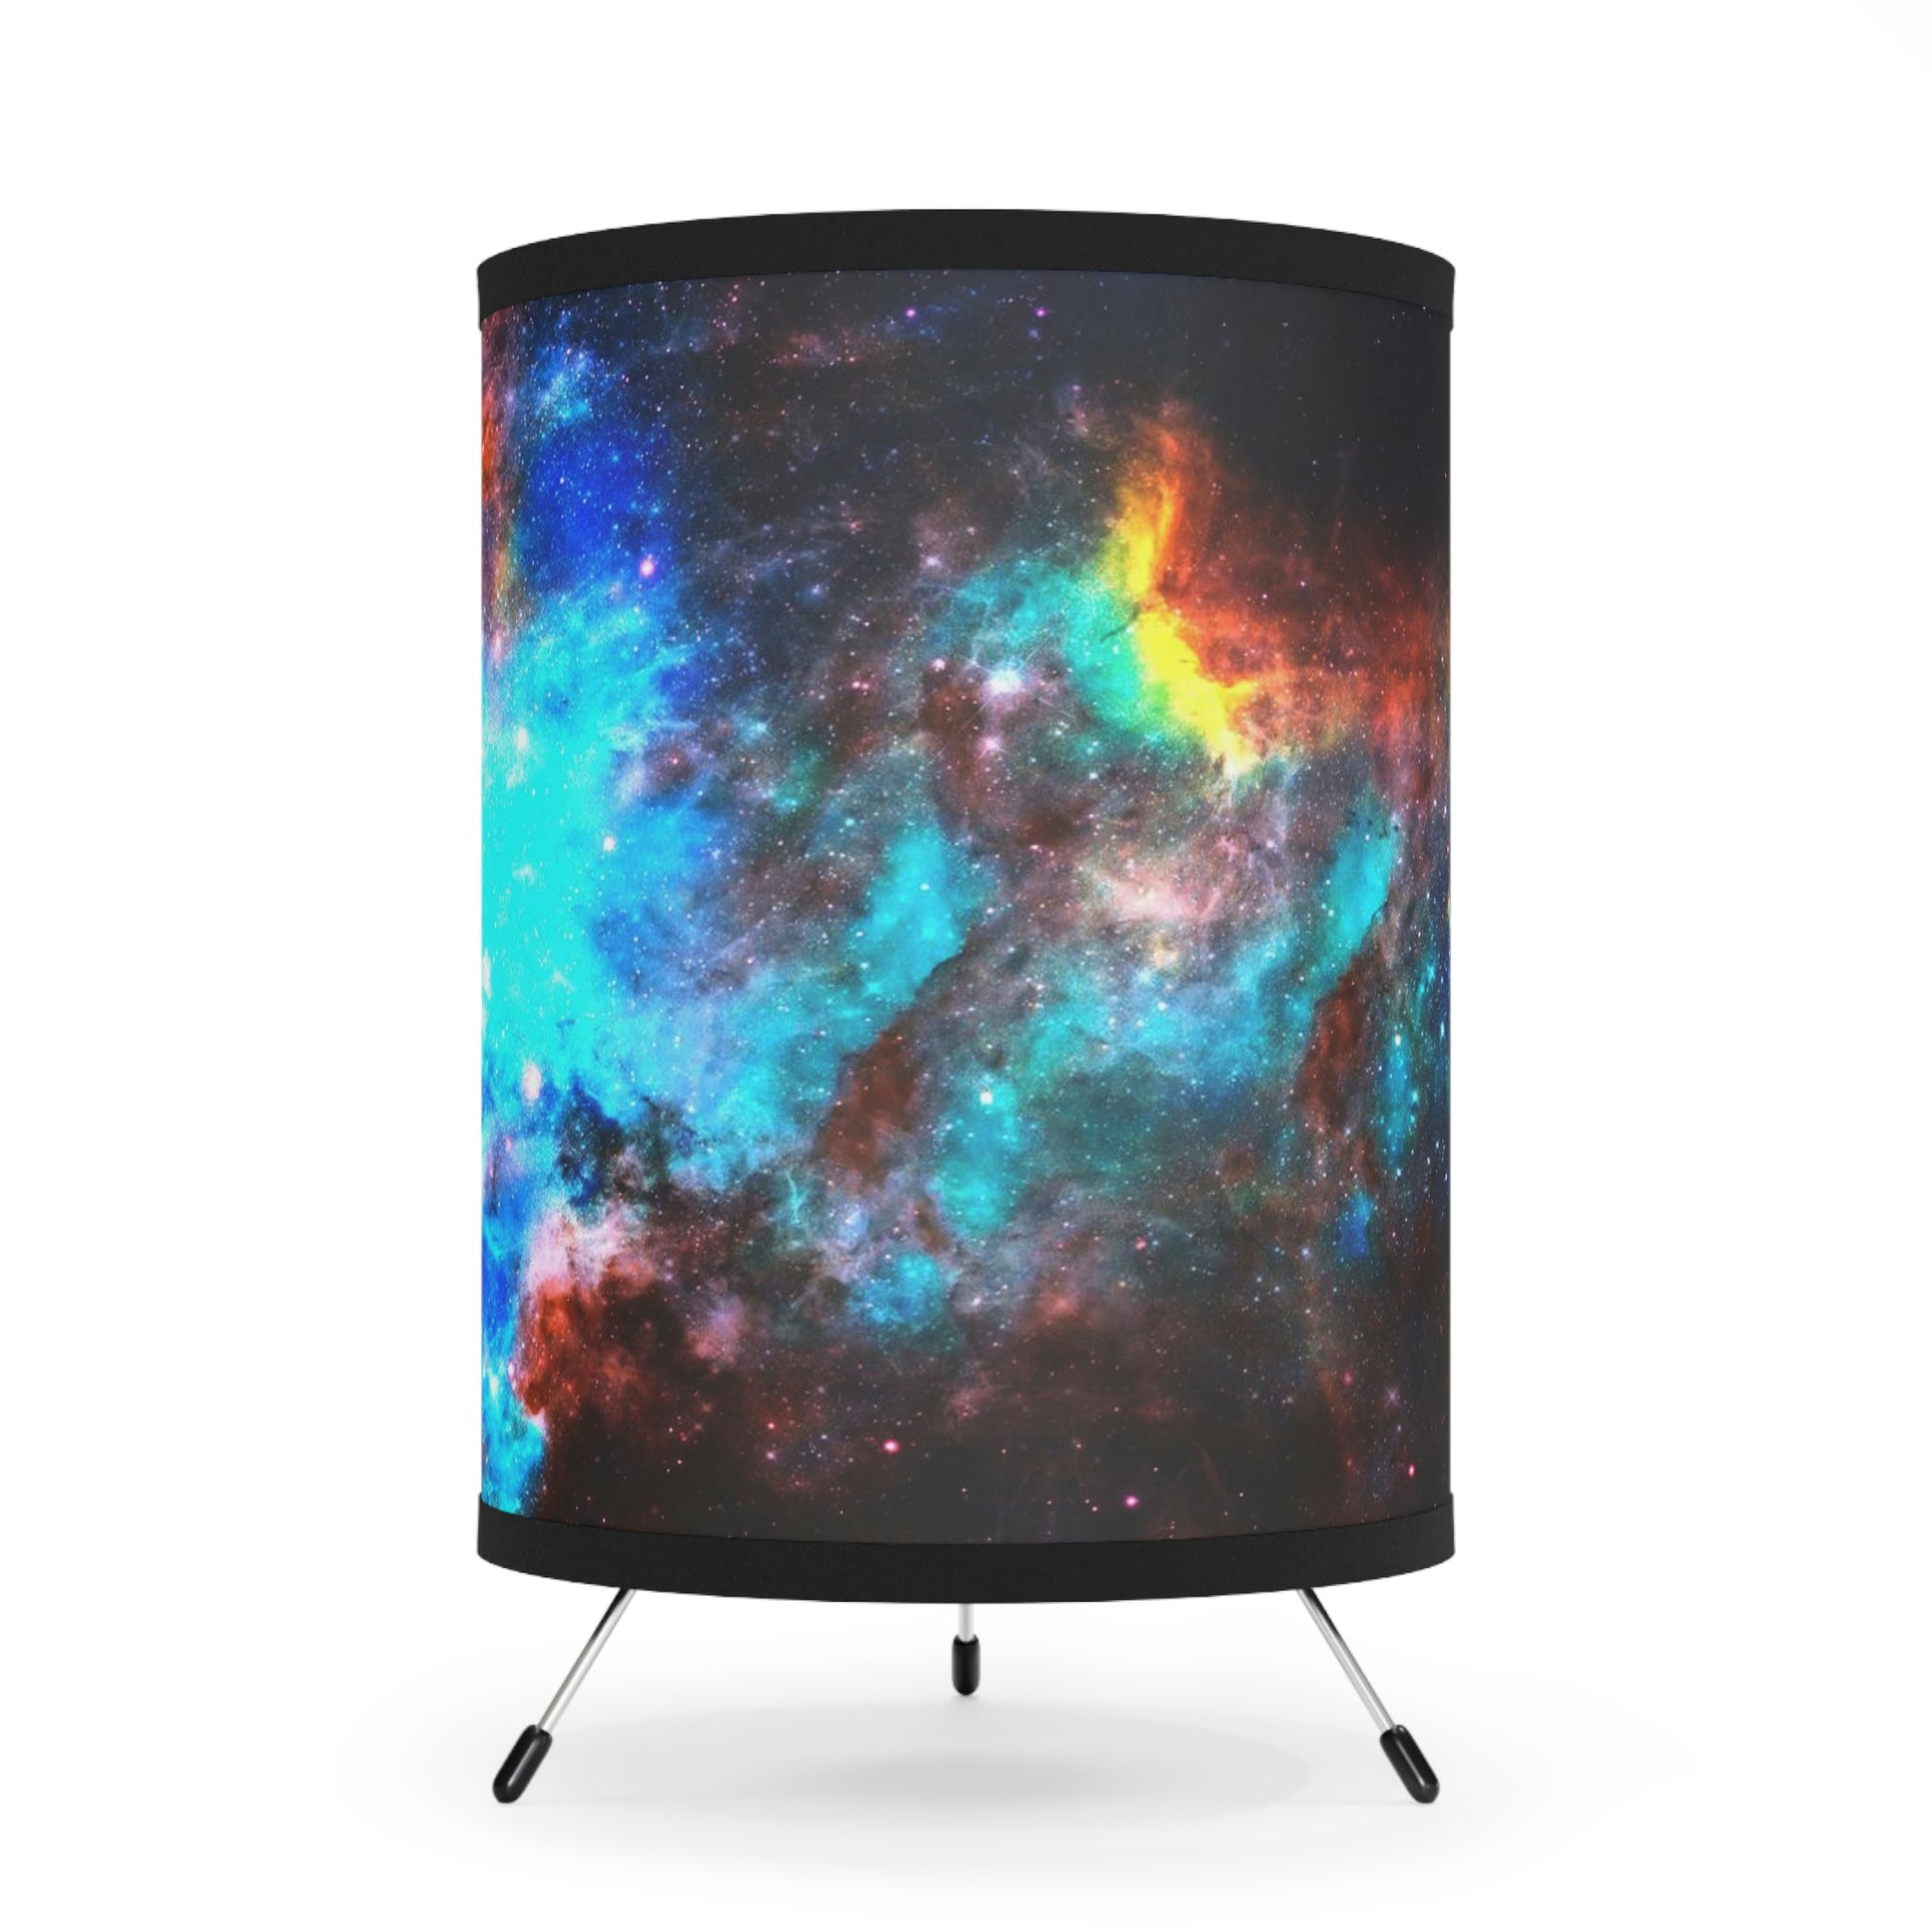 Colorful Nebula Tripod Lamp